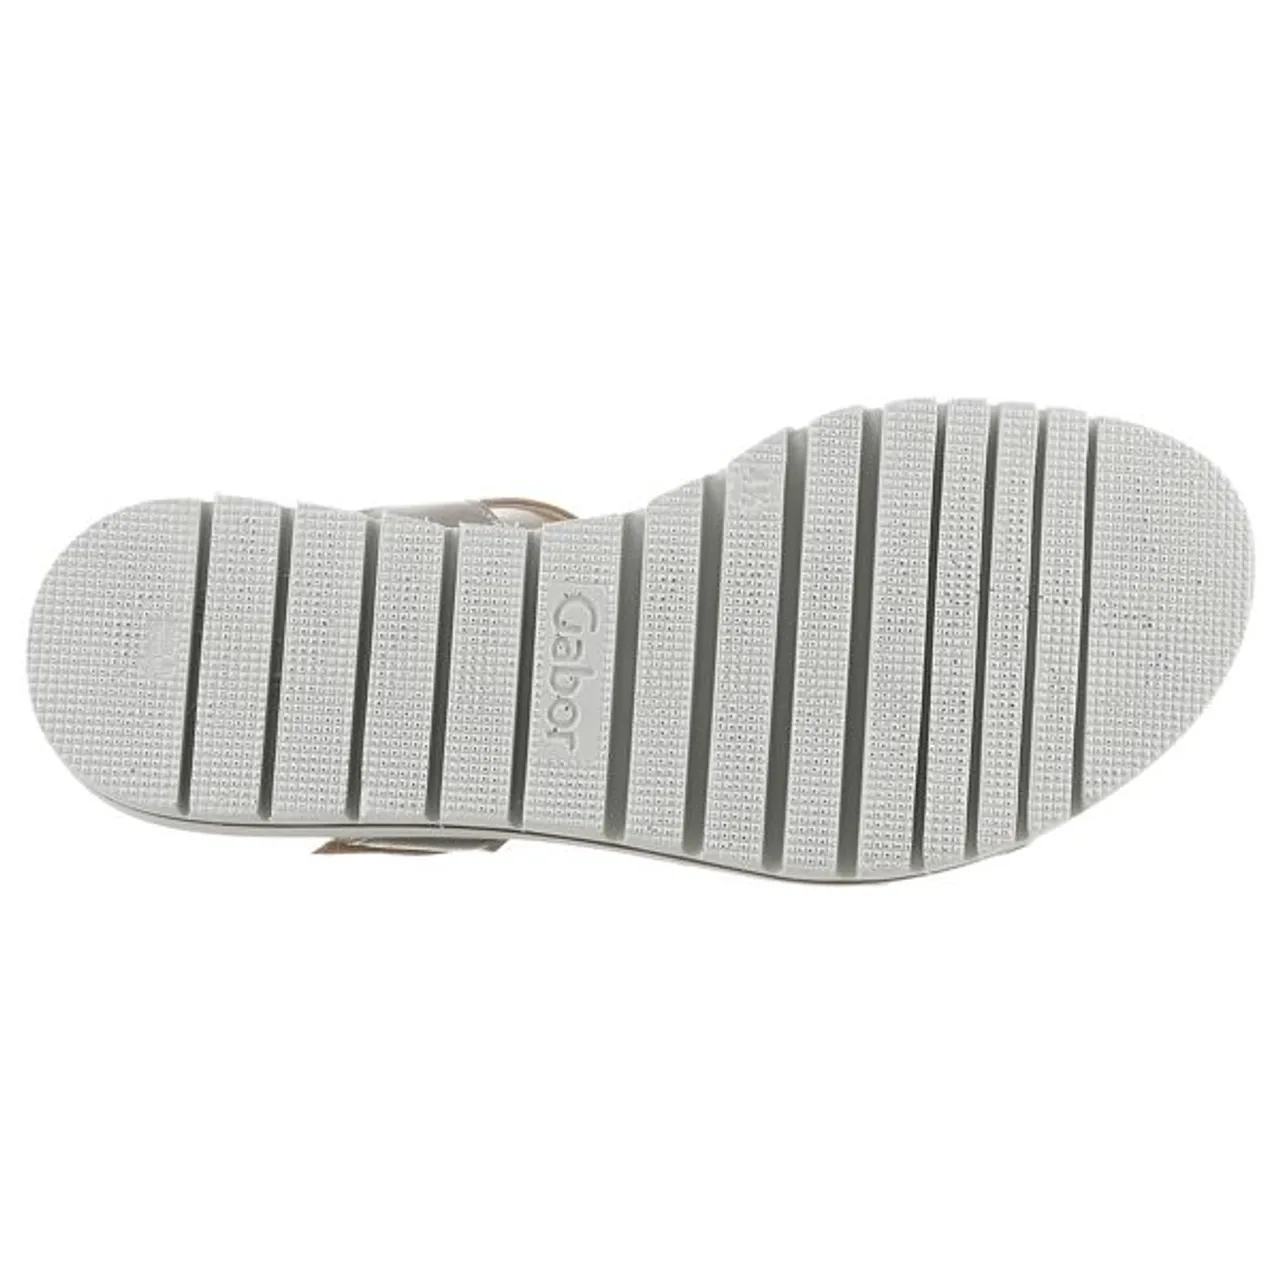 Keilsandalette GABOR Gr. 42, grau (platinfarben) Damen Schuhe Sandaletten Sommerschuh, Sandale, Keilabsatz, mit praktischem Klettverschluss